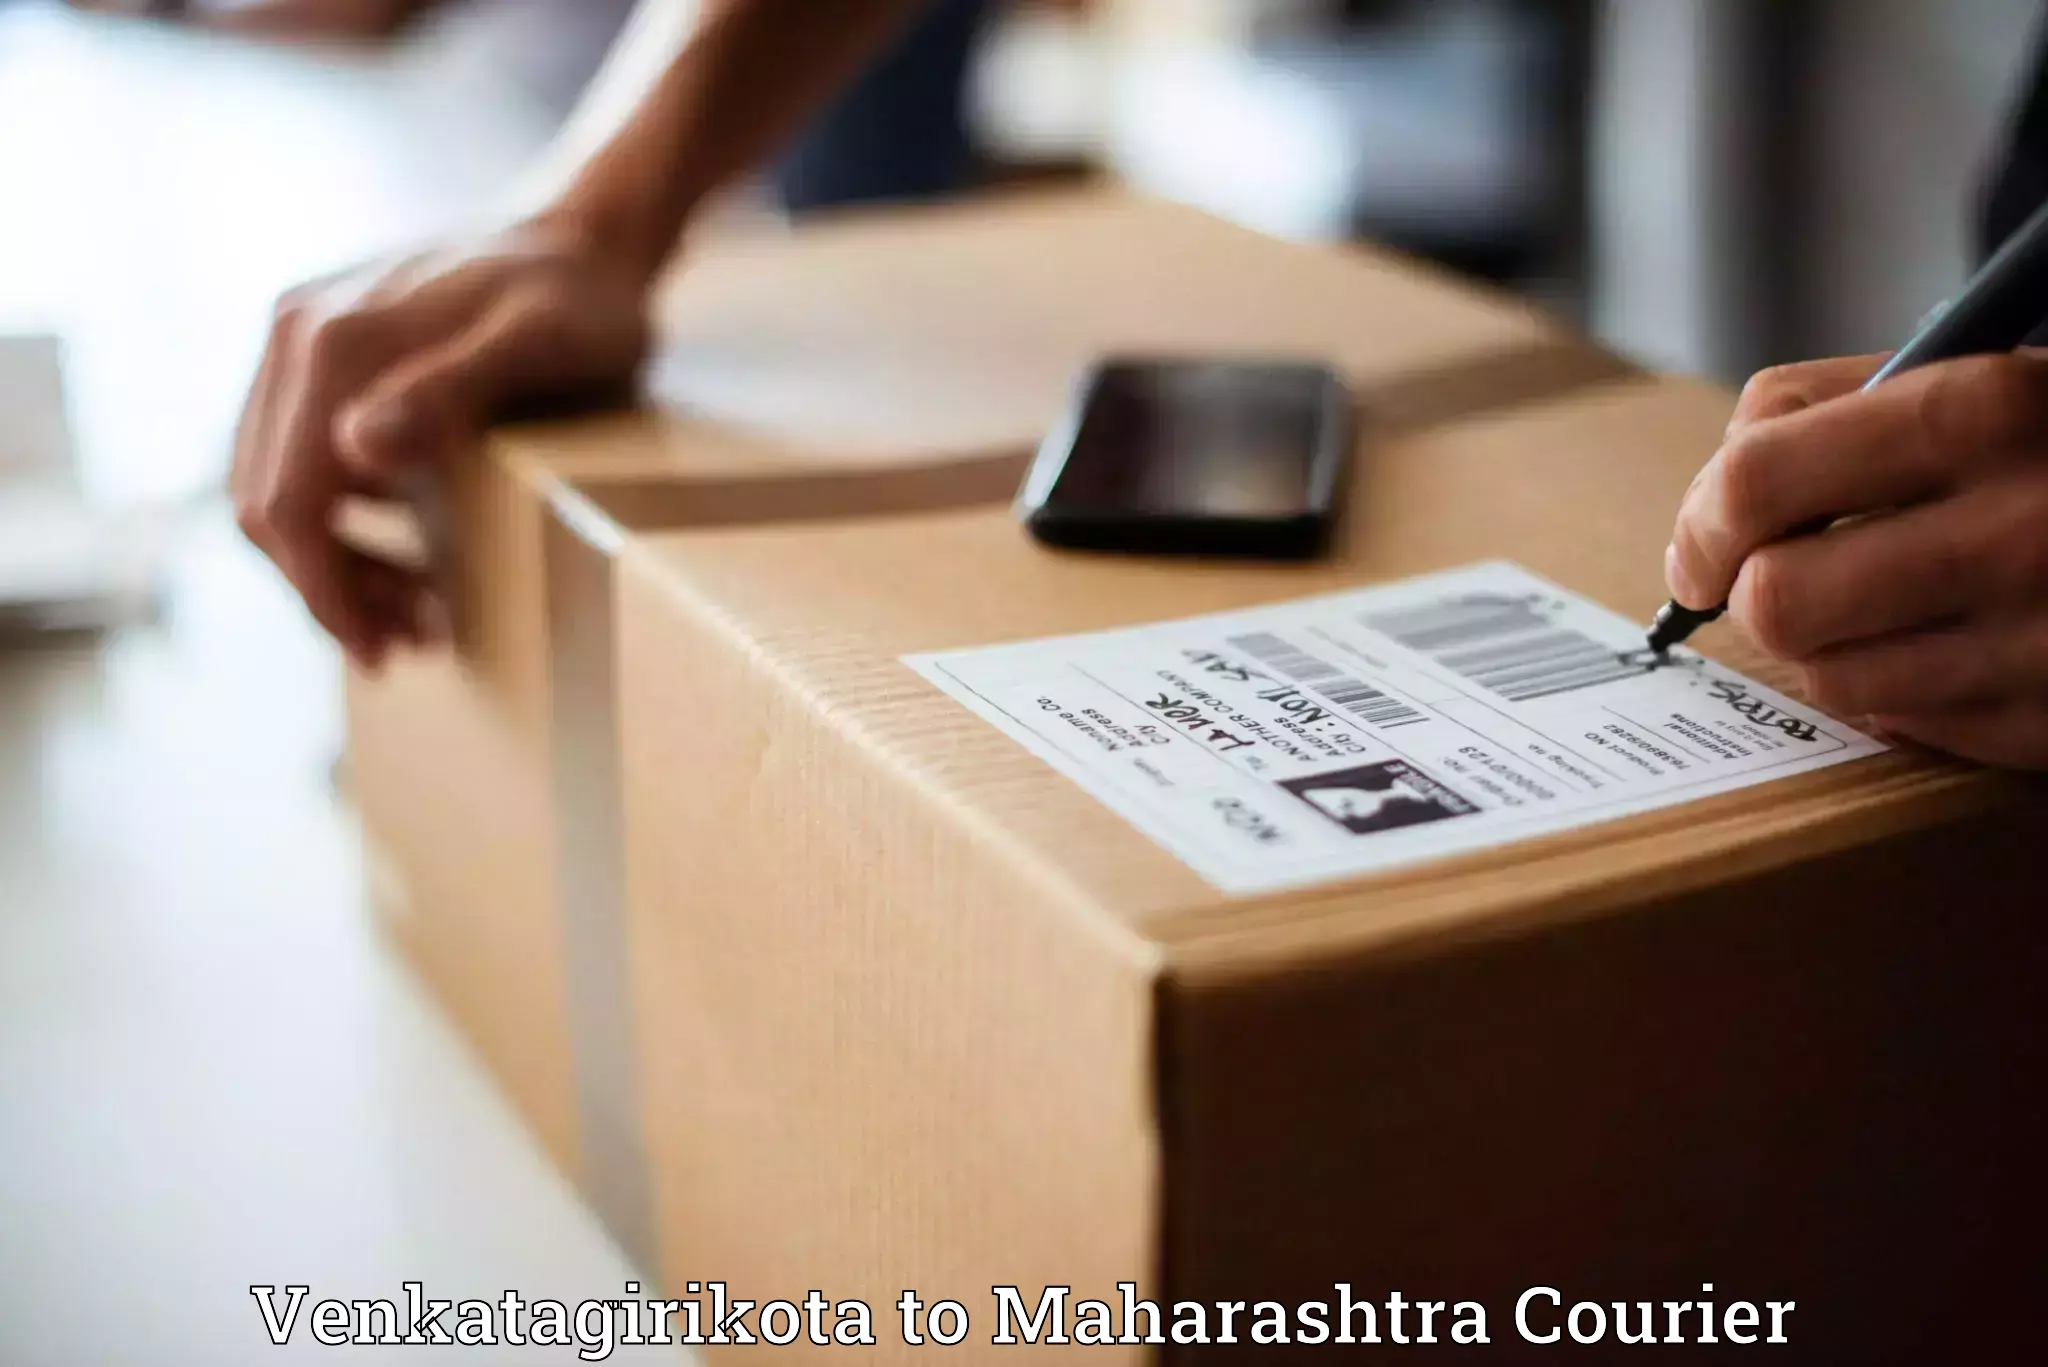 High-priority parcel service Venkatagirikota to Jamkhed